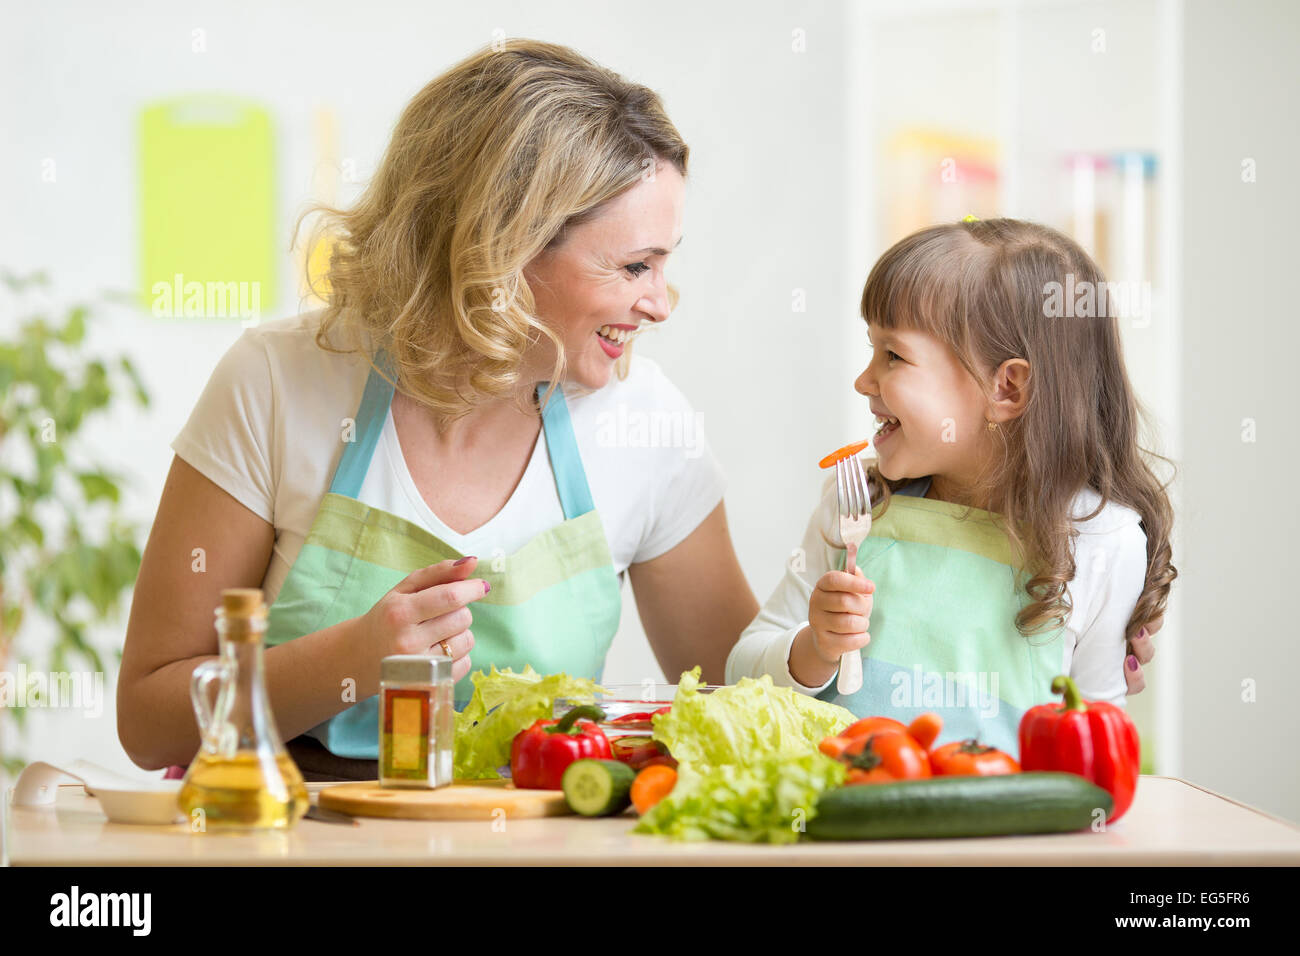 Mutter und ihr Kind gesundes Essen zubereiten und dabei Spaß haben Stockfoto